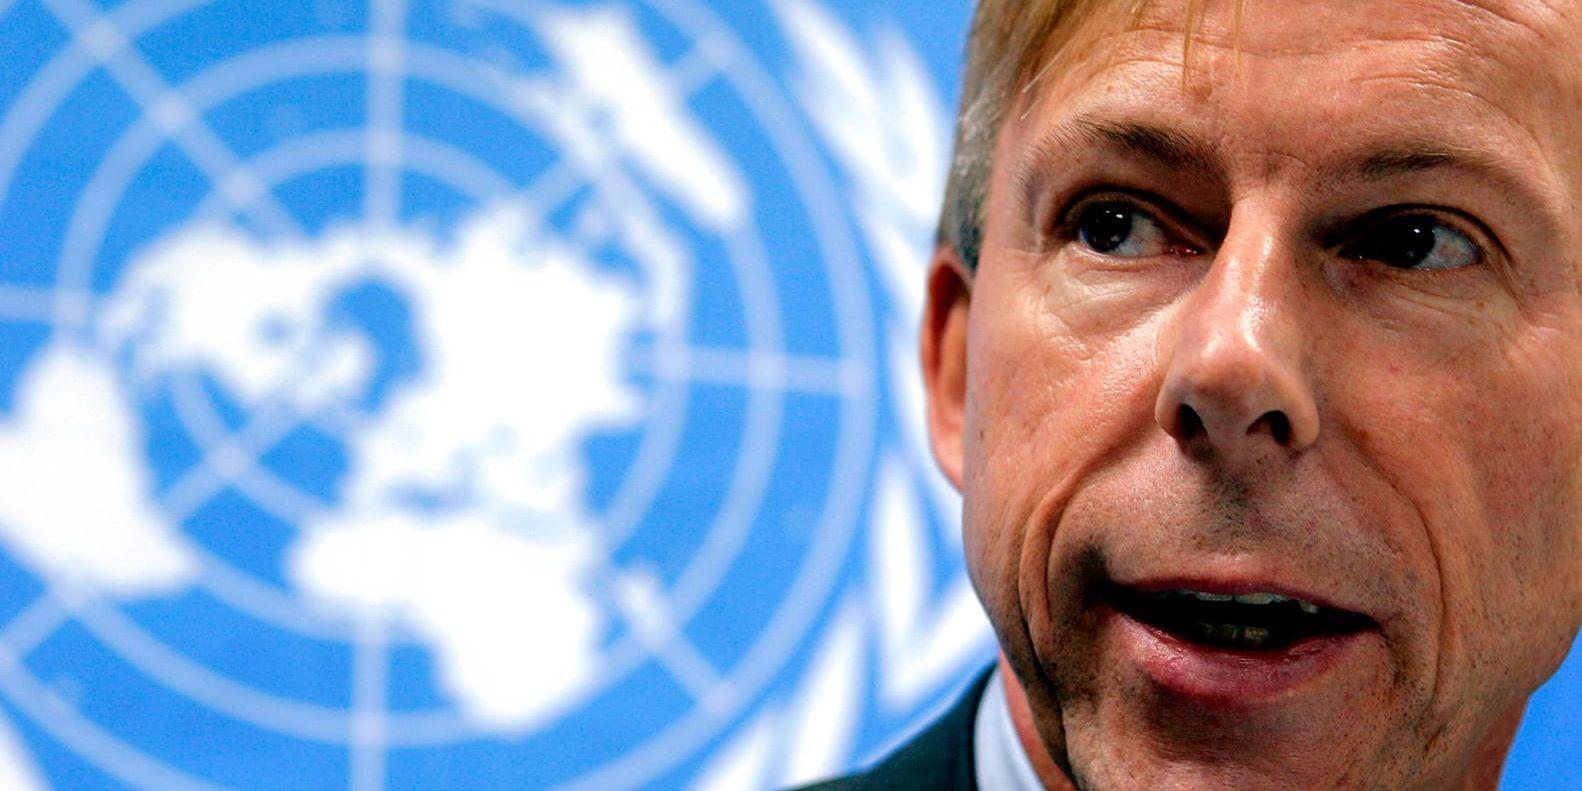 Anders Kompass, känd för många som den FN-anställd som larmade om att FN-soldater begått sexuella övergrepp mot barn i Centralafrikanska republiken, uppges ha blivit nekad posten som ambassadör i Guatemala av myndigheter där.